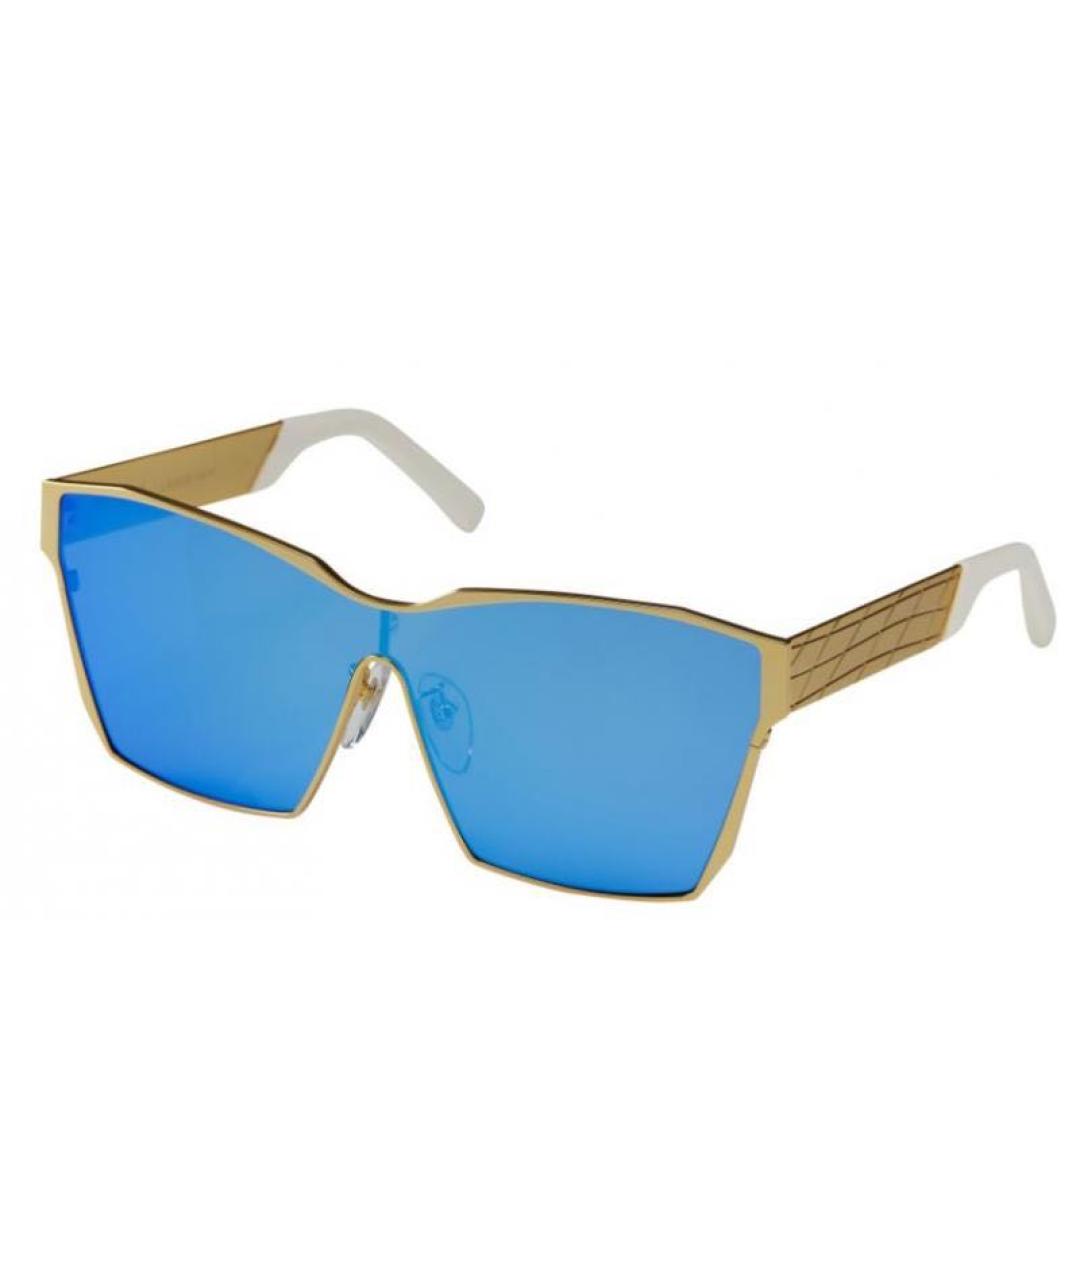 IRRESISTOR Синие металлические солнцезащитные очки, фото 7